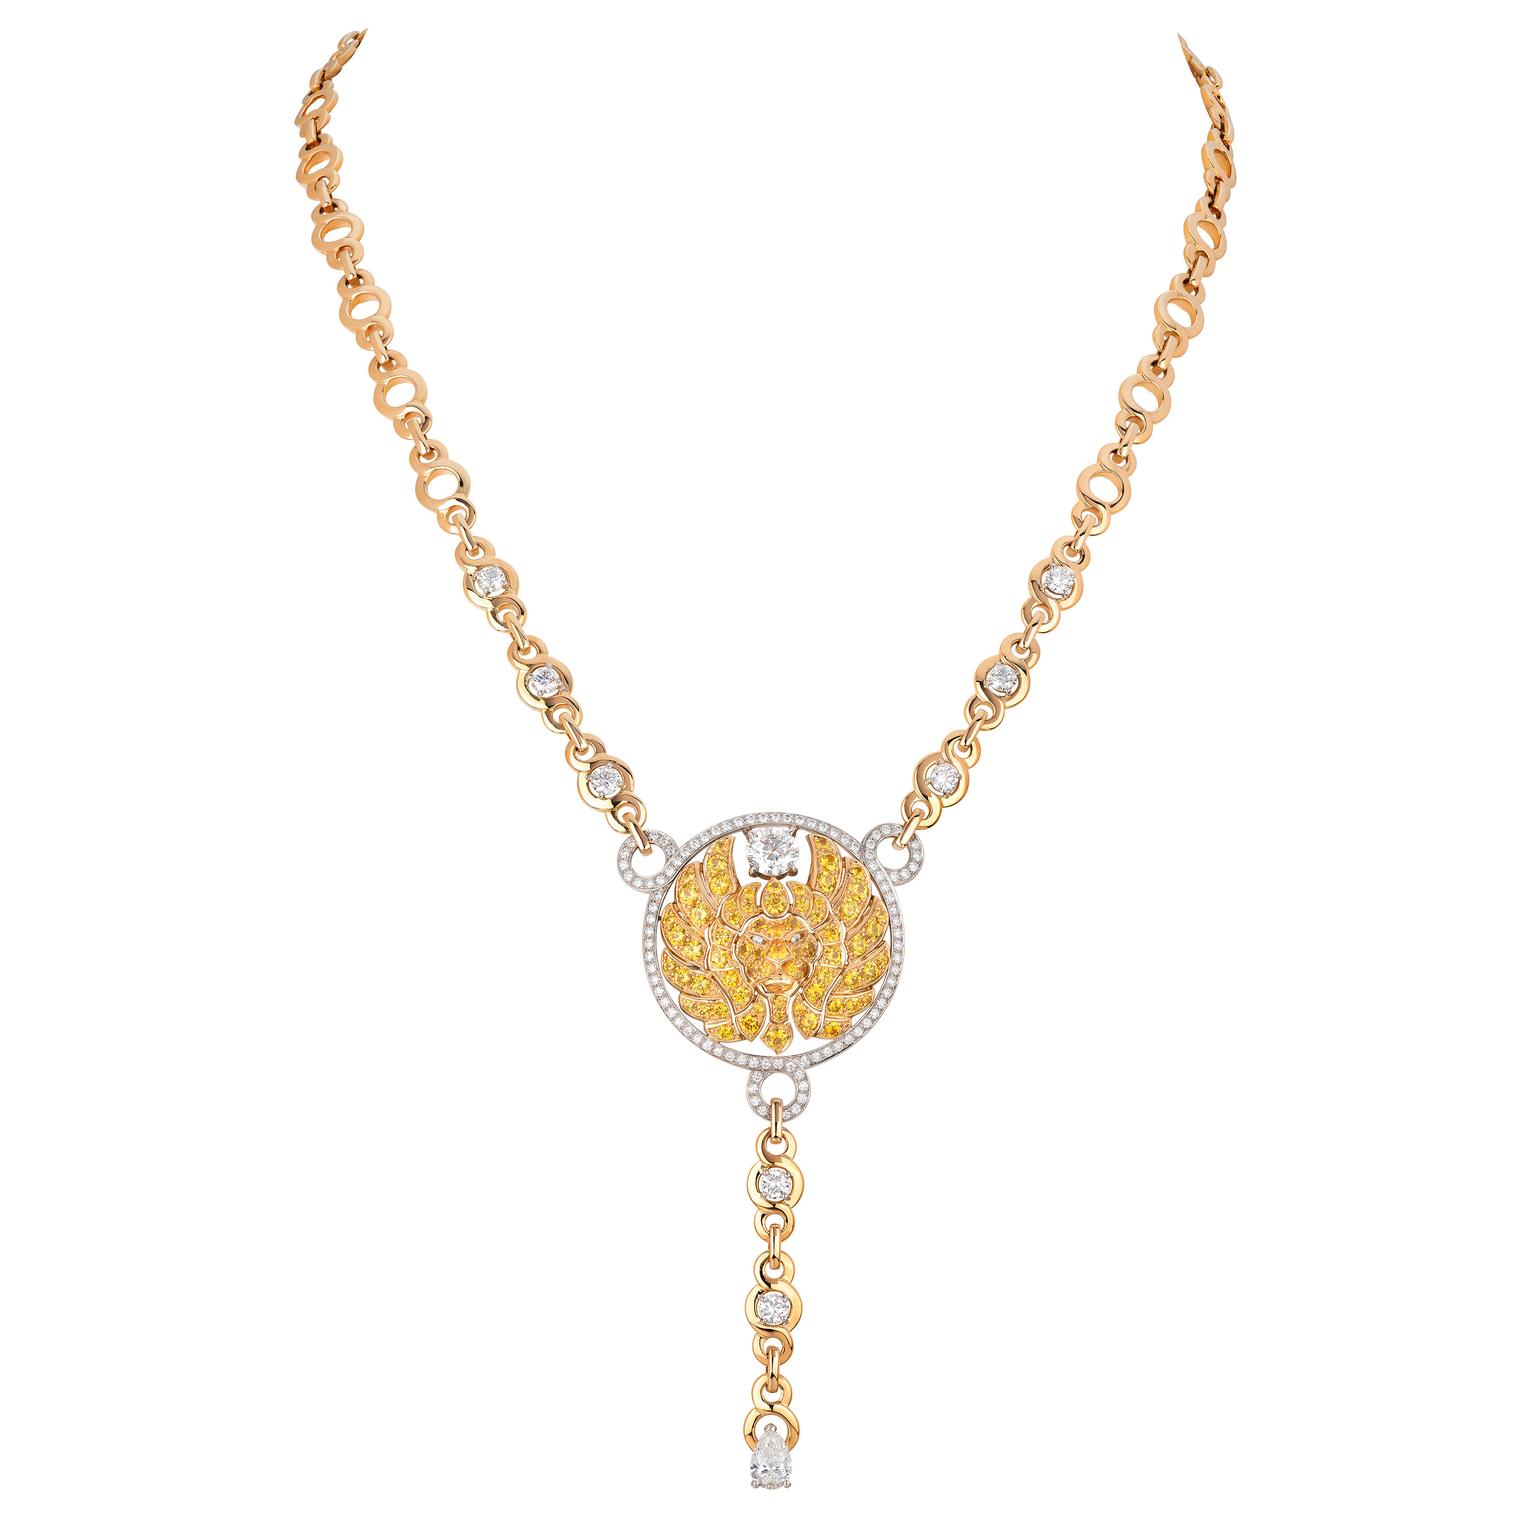 Lion Emblematique necklace by Chanel